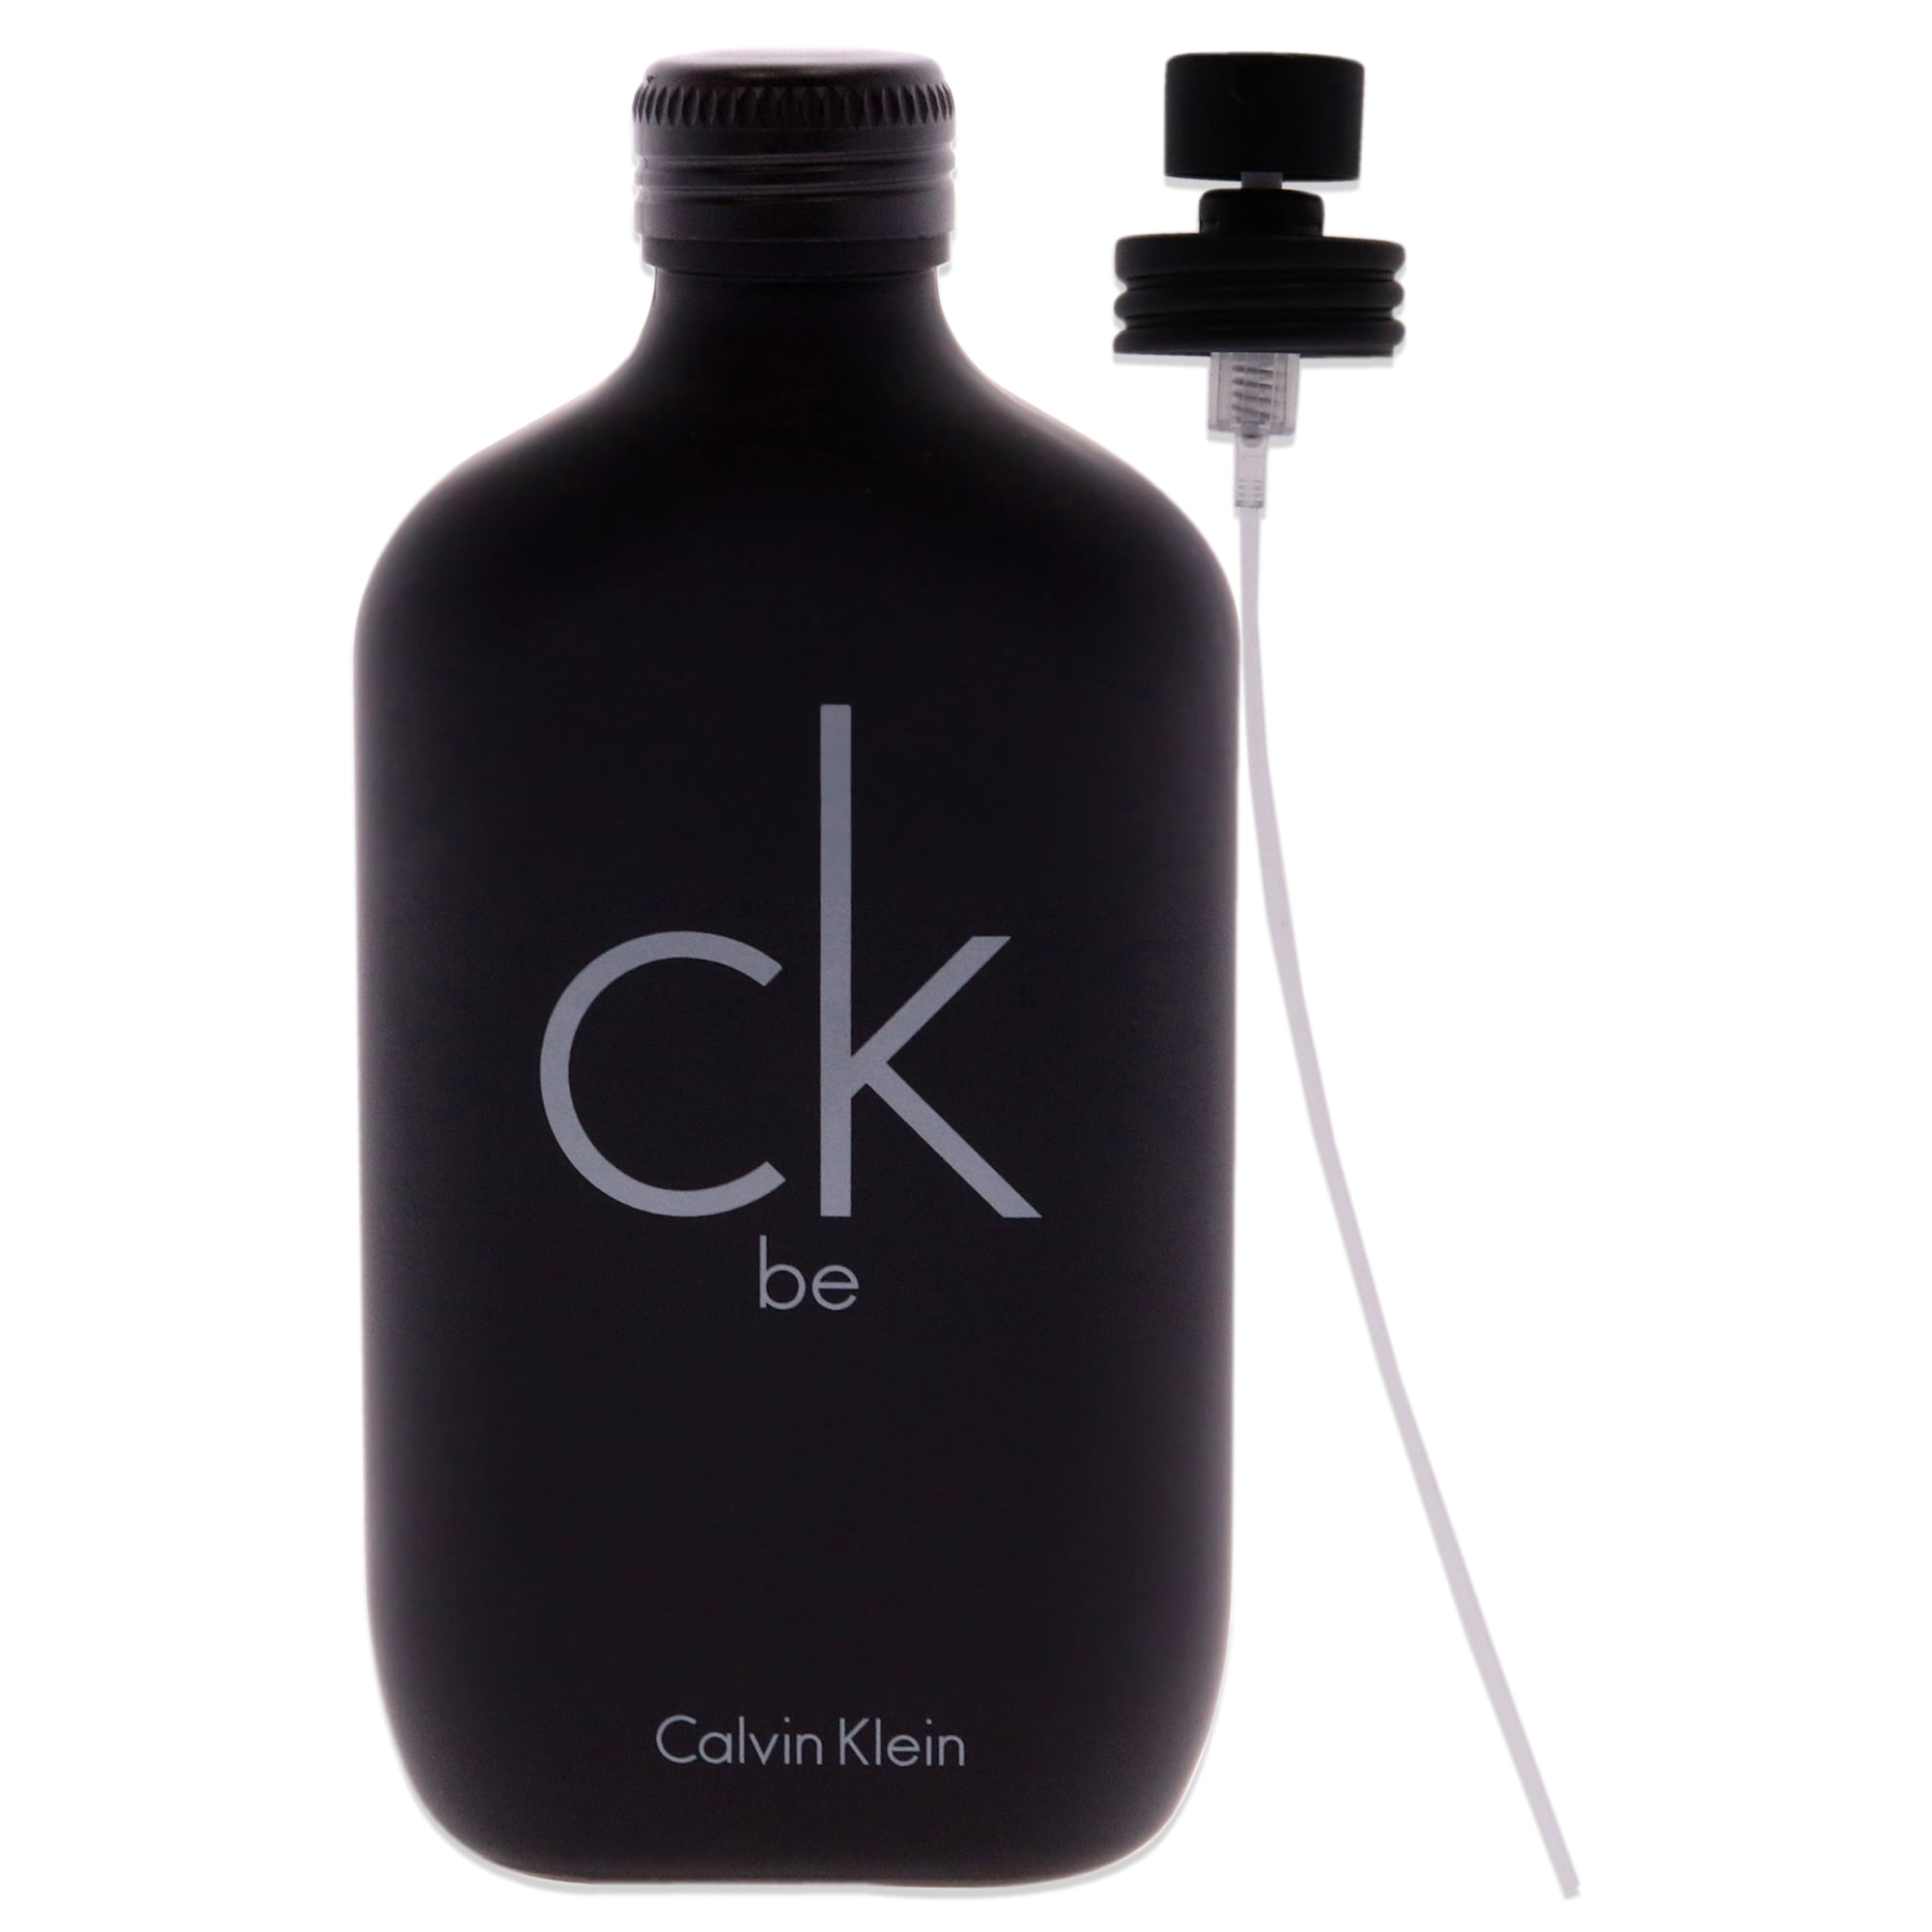 Calvin Klein Beauty CK Be Eau de Toilette, Unisex Fragrance, 6.7 Oz 